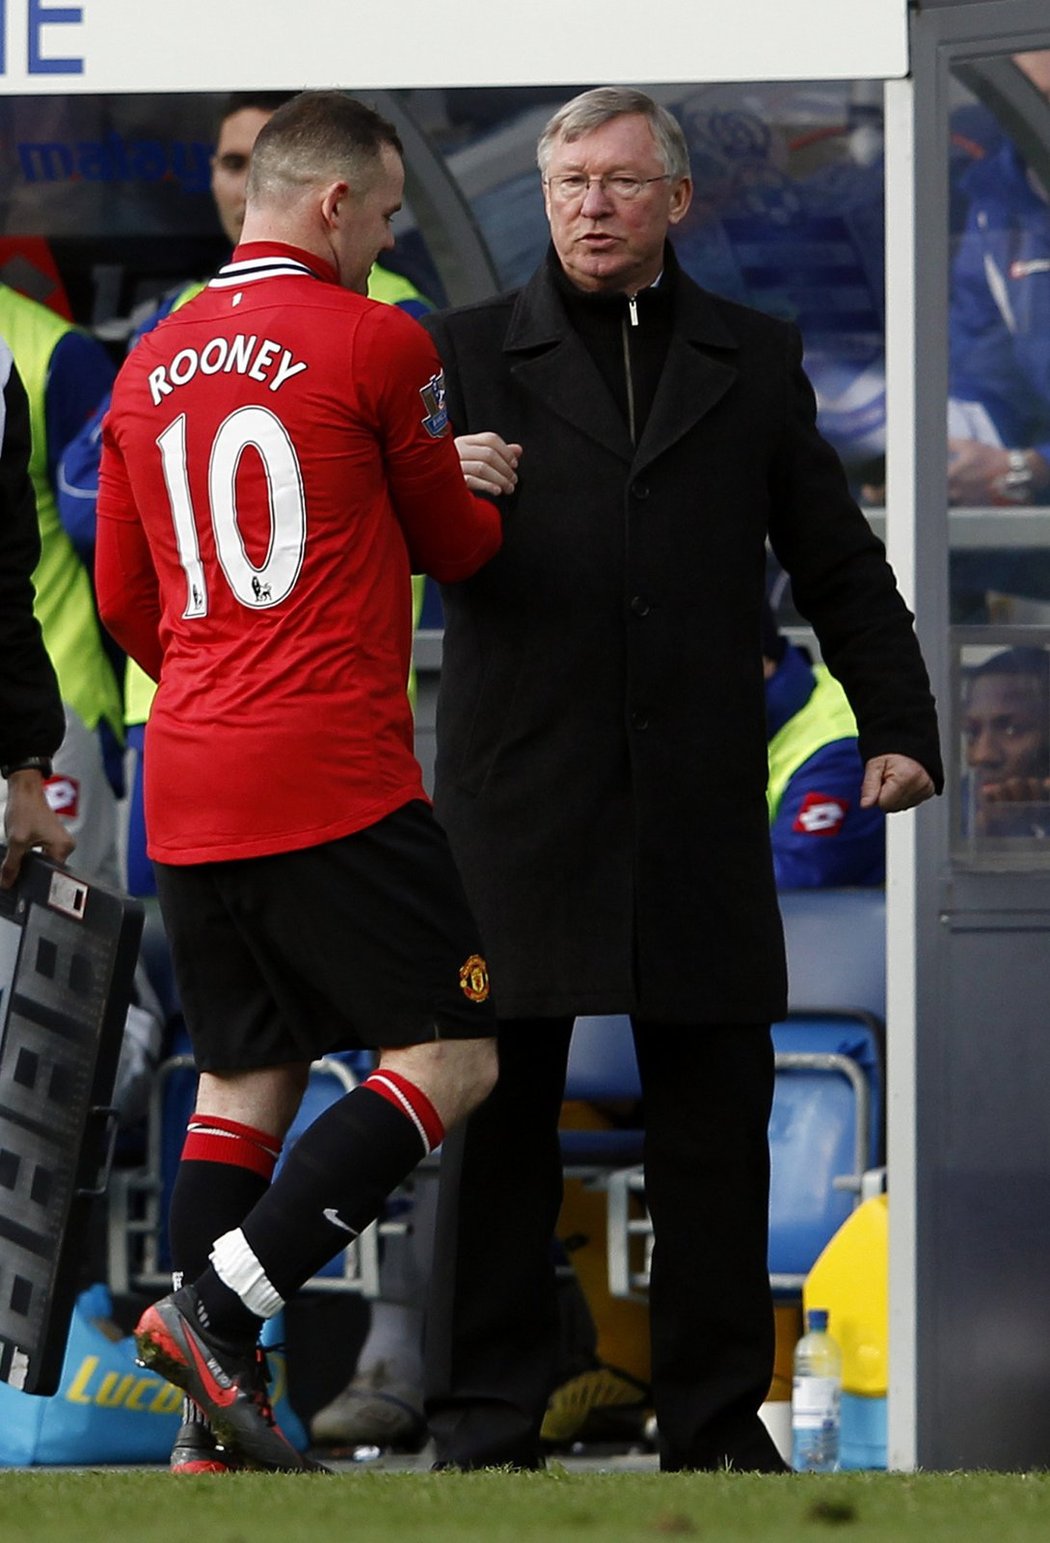 Wayne Rooney si podává ruku s Alexem Fergusonem po střídání v zápase proti Queens Park Rangers